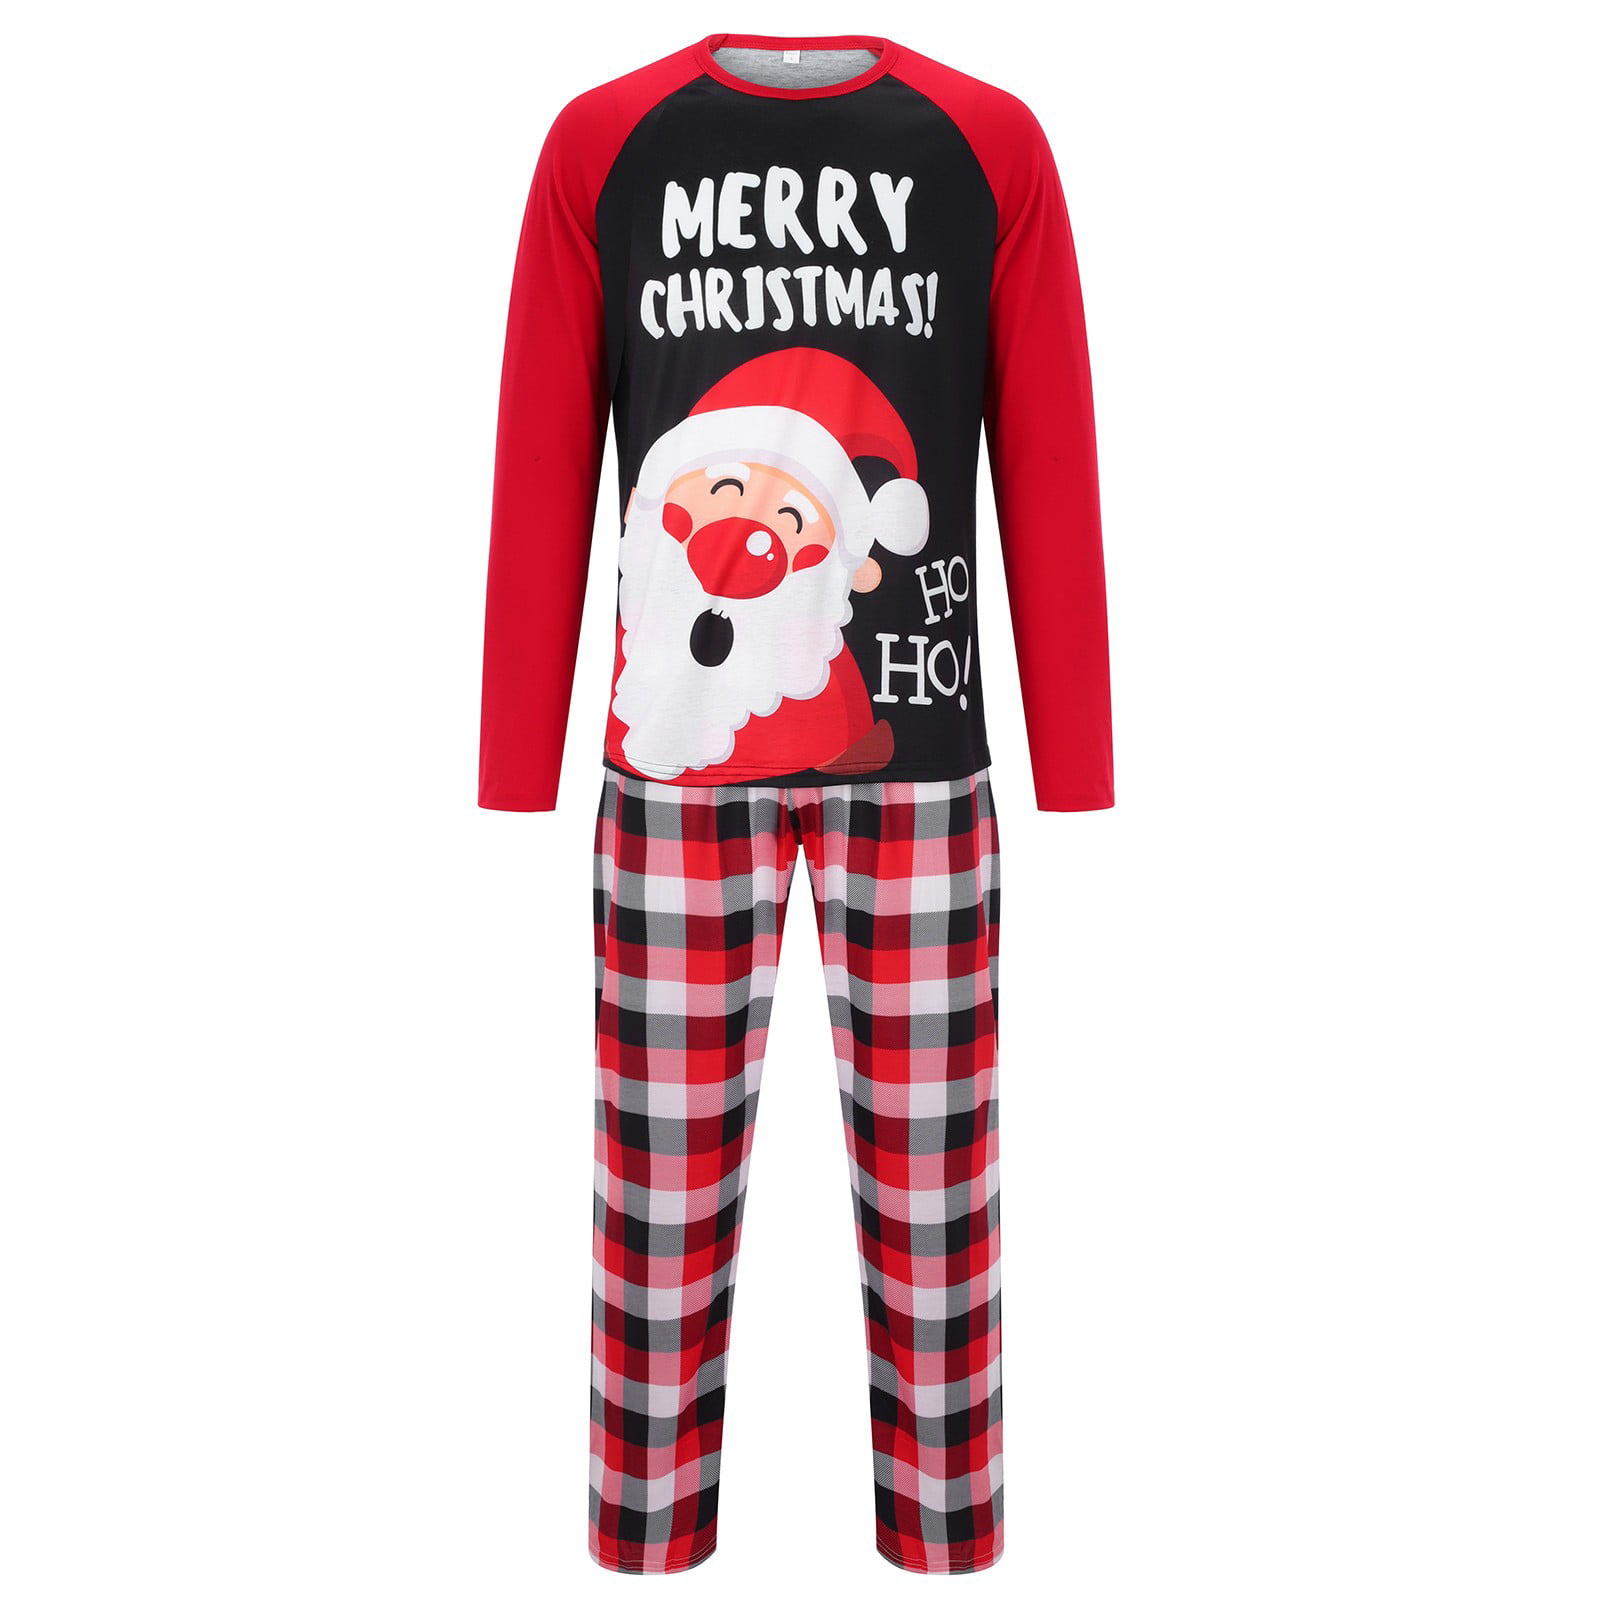 【される】 PajamaGram Matching Pajamas For Couples - Couples Christmas ...